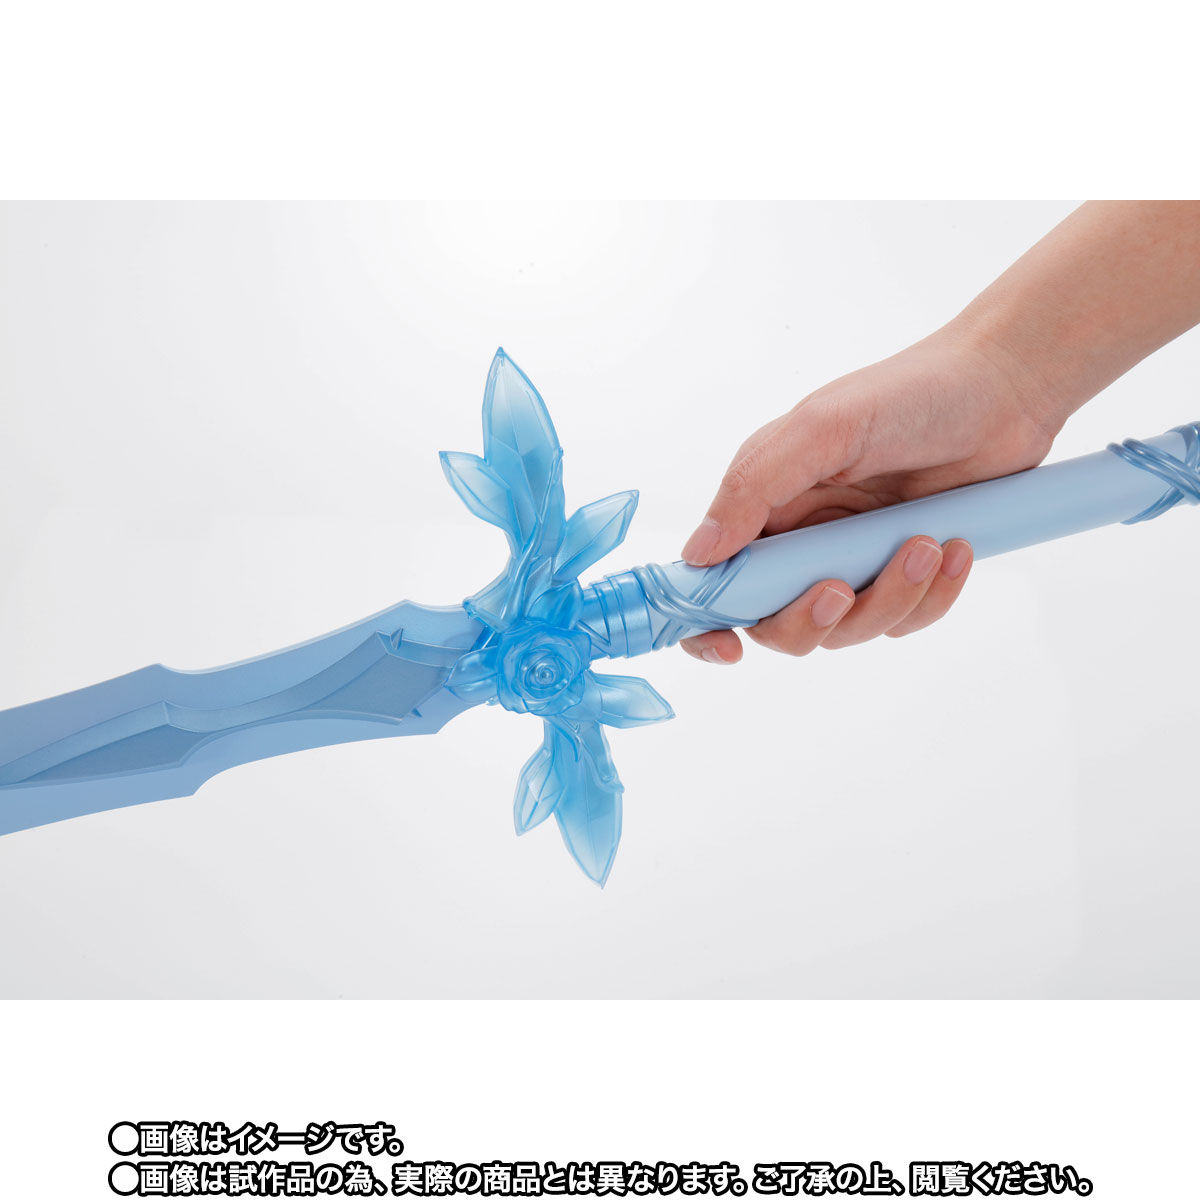 【限定販売】PROPLICA プロップリカ『青薔薇の剣』ソードアート・オンライン 変身なりきり-004